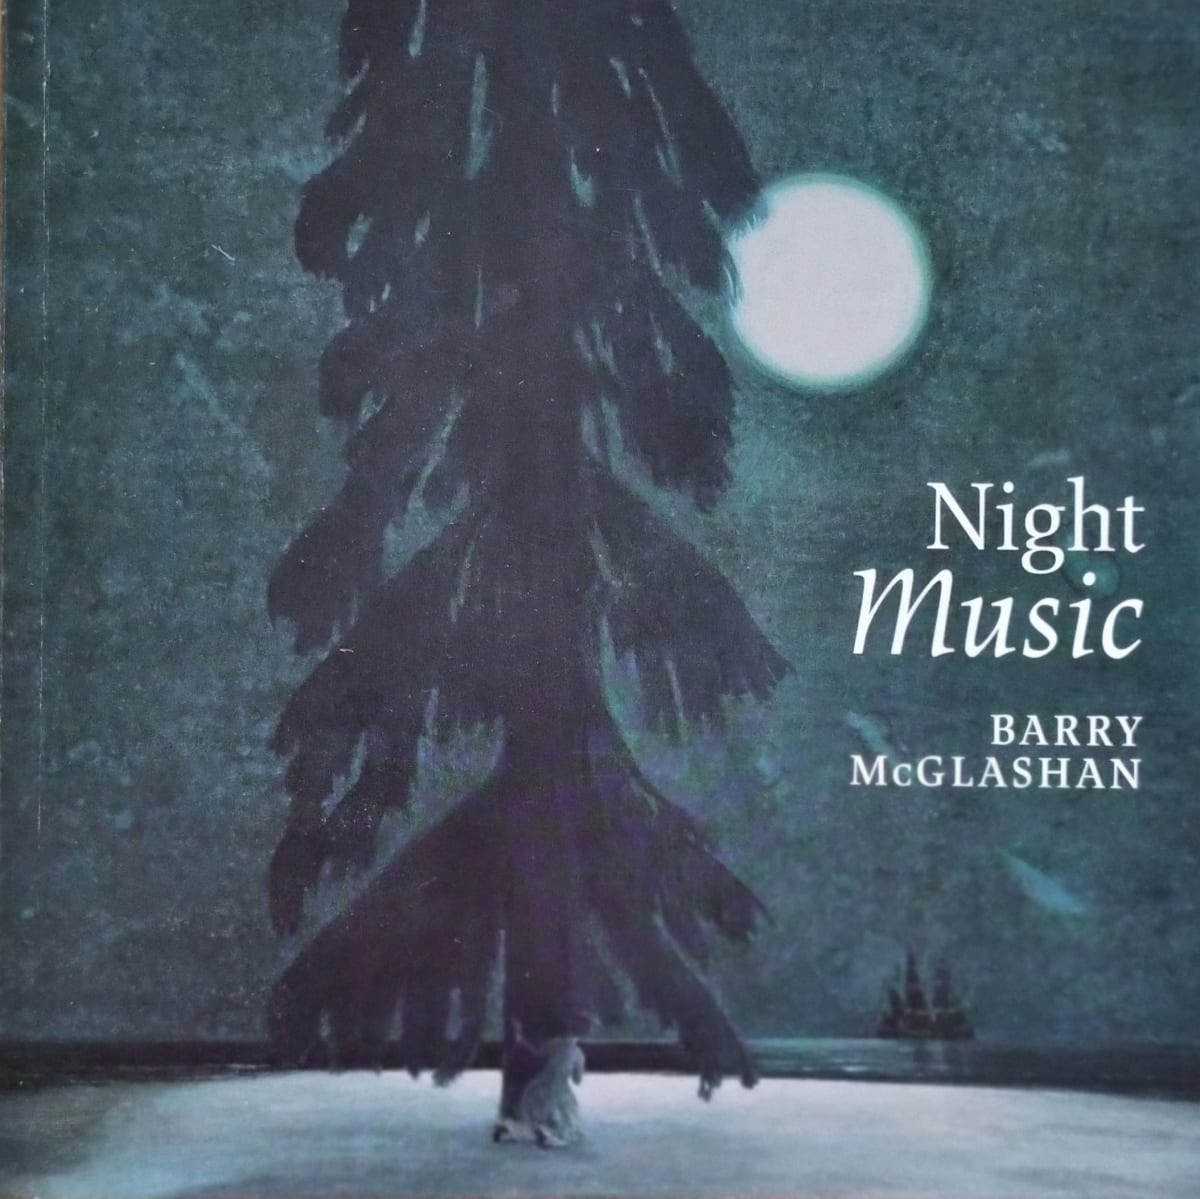 Night Music - Barry McGlashan